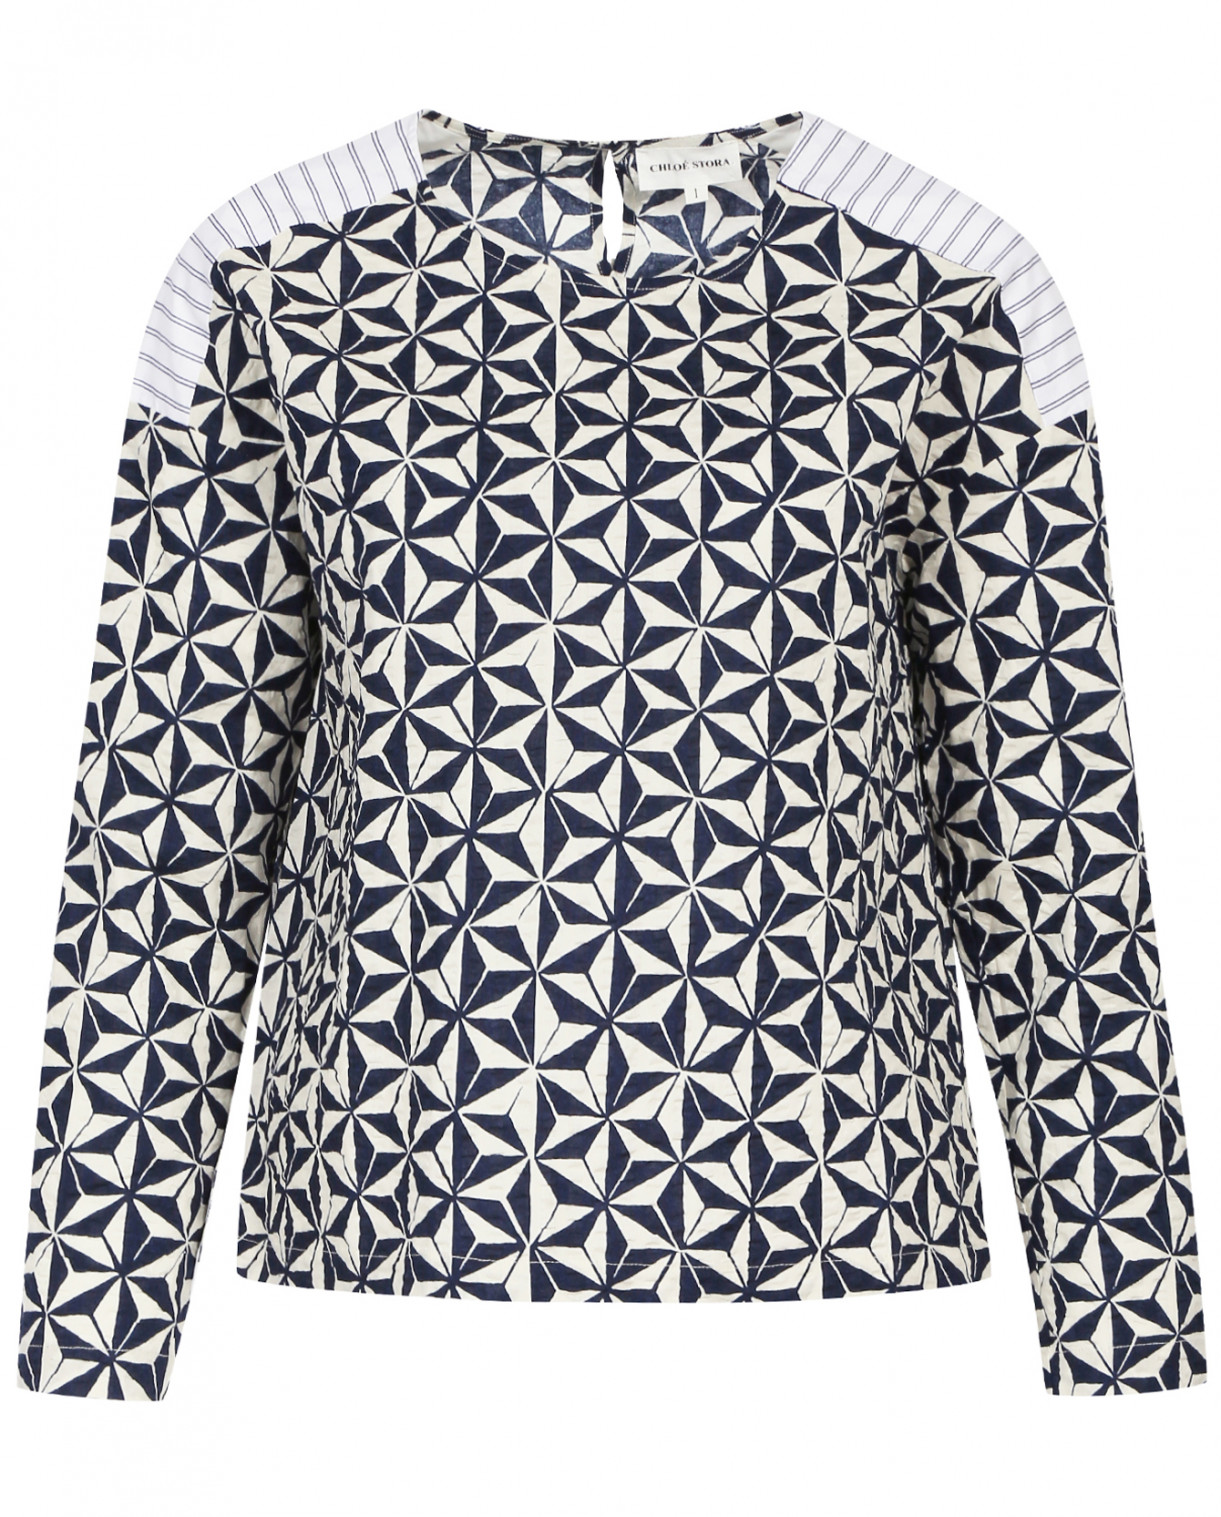 Блуза свободного фасона из хлопка с узором и контрастными вставками Chloé Stora  –  Общий вид  – Цвет:  Синий